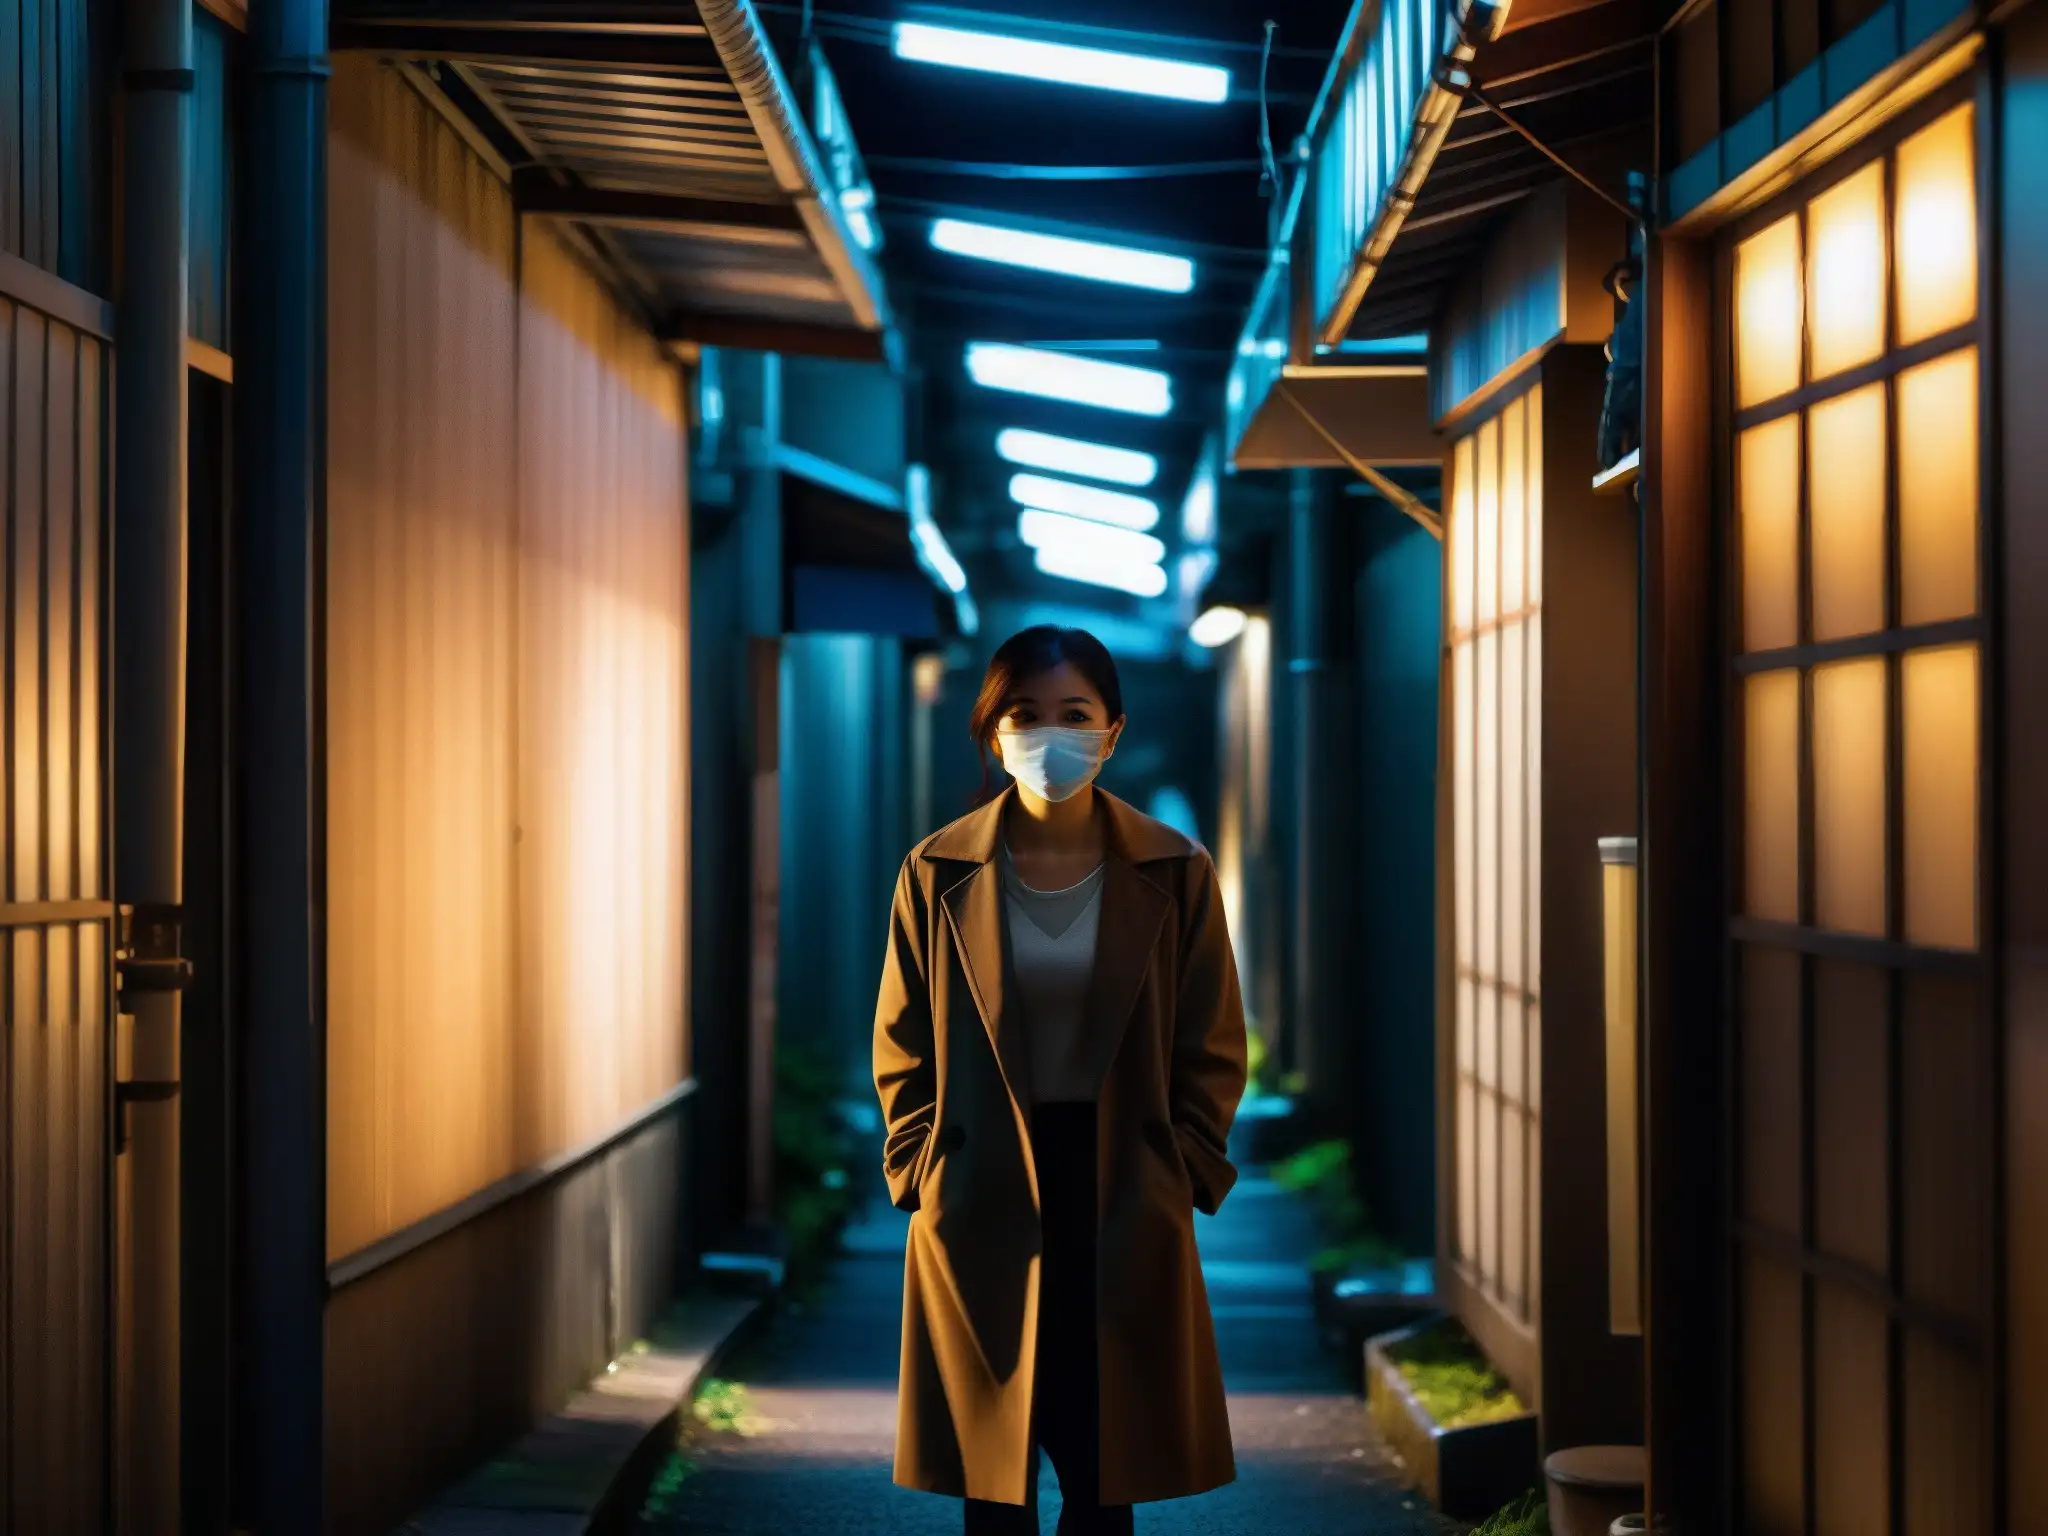 Imagen documental de un callejón urbano en Japón, con una misteriosa silueta femenina en la penumbra